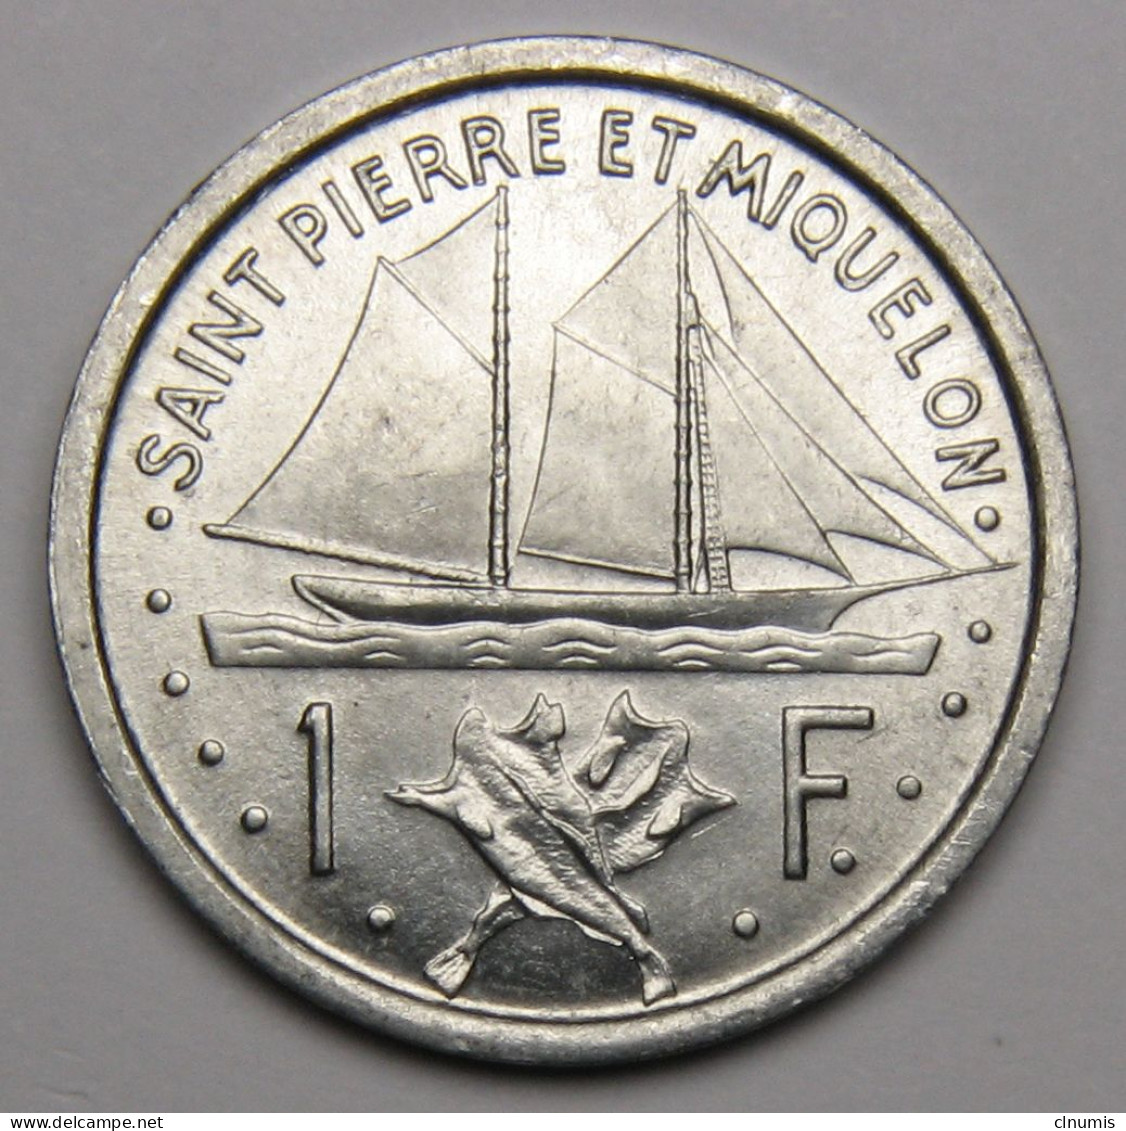 ASSEZ RARE : Saint-Pierre-et-Miquelon, 1 Franc Union Française, 1948 - Saint-Pierre-et-Miquelon